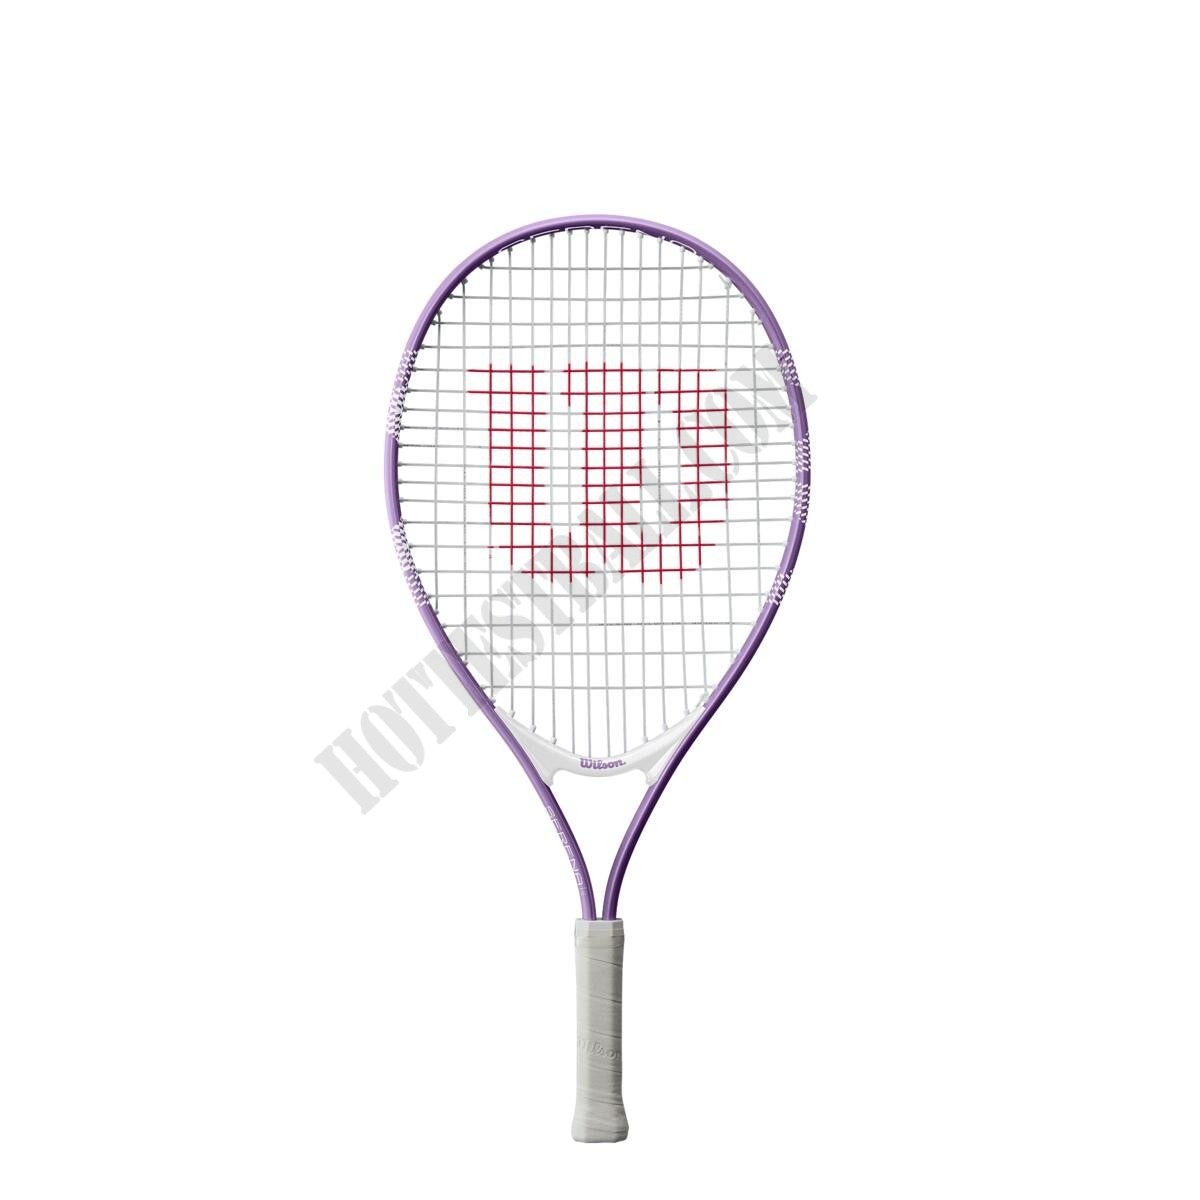 Serena 23 Tennis Racket - Wilson Discount Store - -0